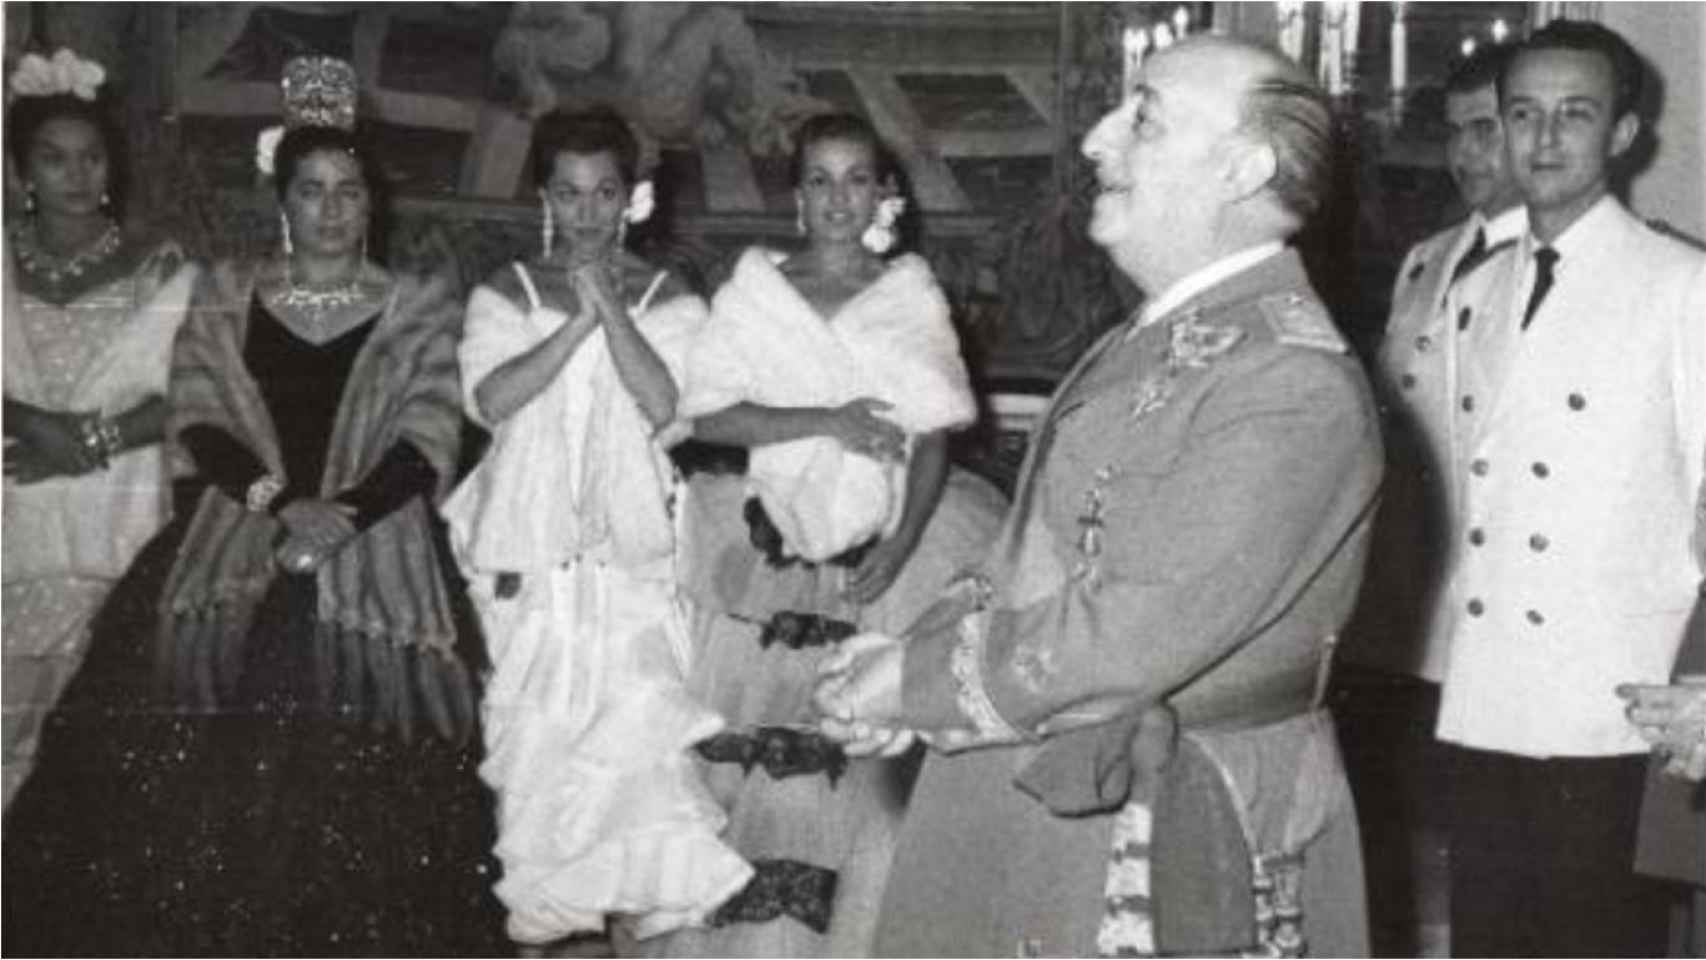 De izquierda a derecha: Lola Flores, Juanita Reina, Paquita Rico, Carmen Sevilla y el dictador Francisco Franco en La Granja en 1958.